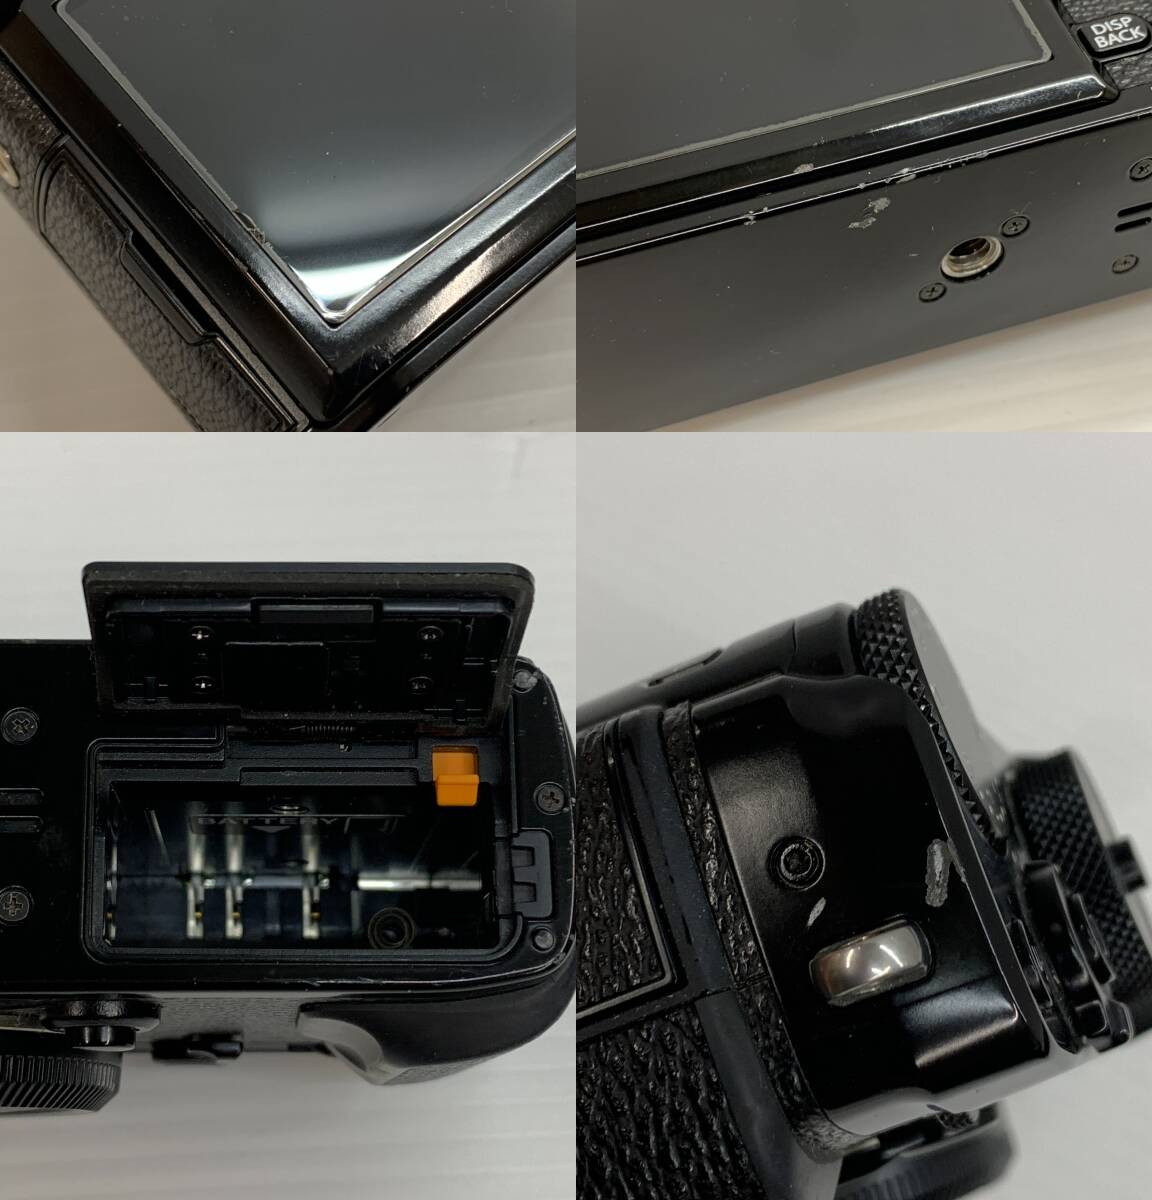 105-KE1283-80s Fuji film беззеркальный цифровой однообъективный зеркальный камера X-Pro2 + PERGEFIR линзы комплект рабочее состояние подтверждено 